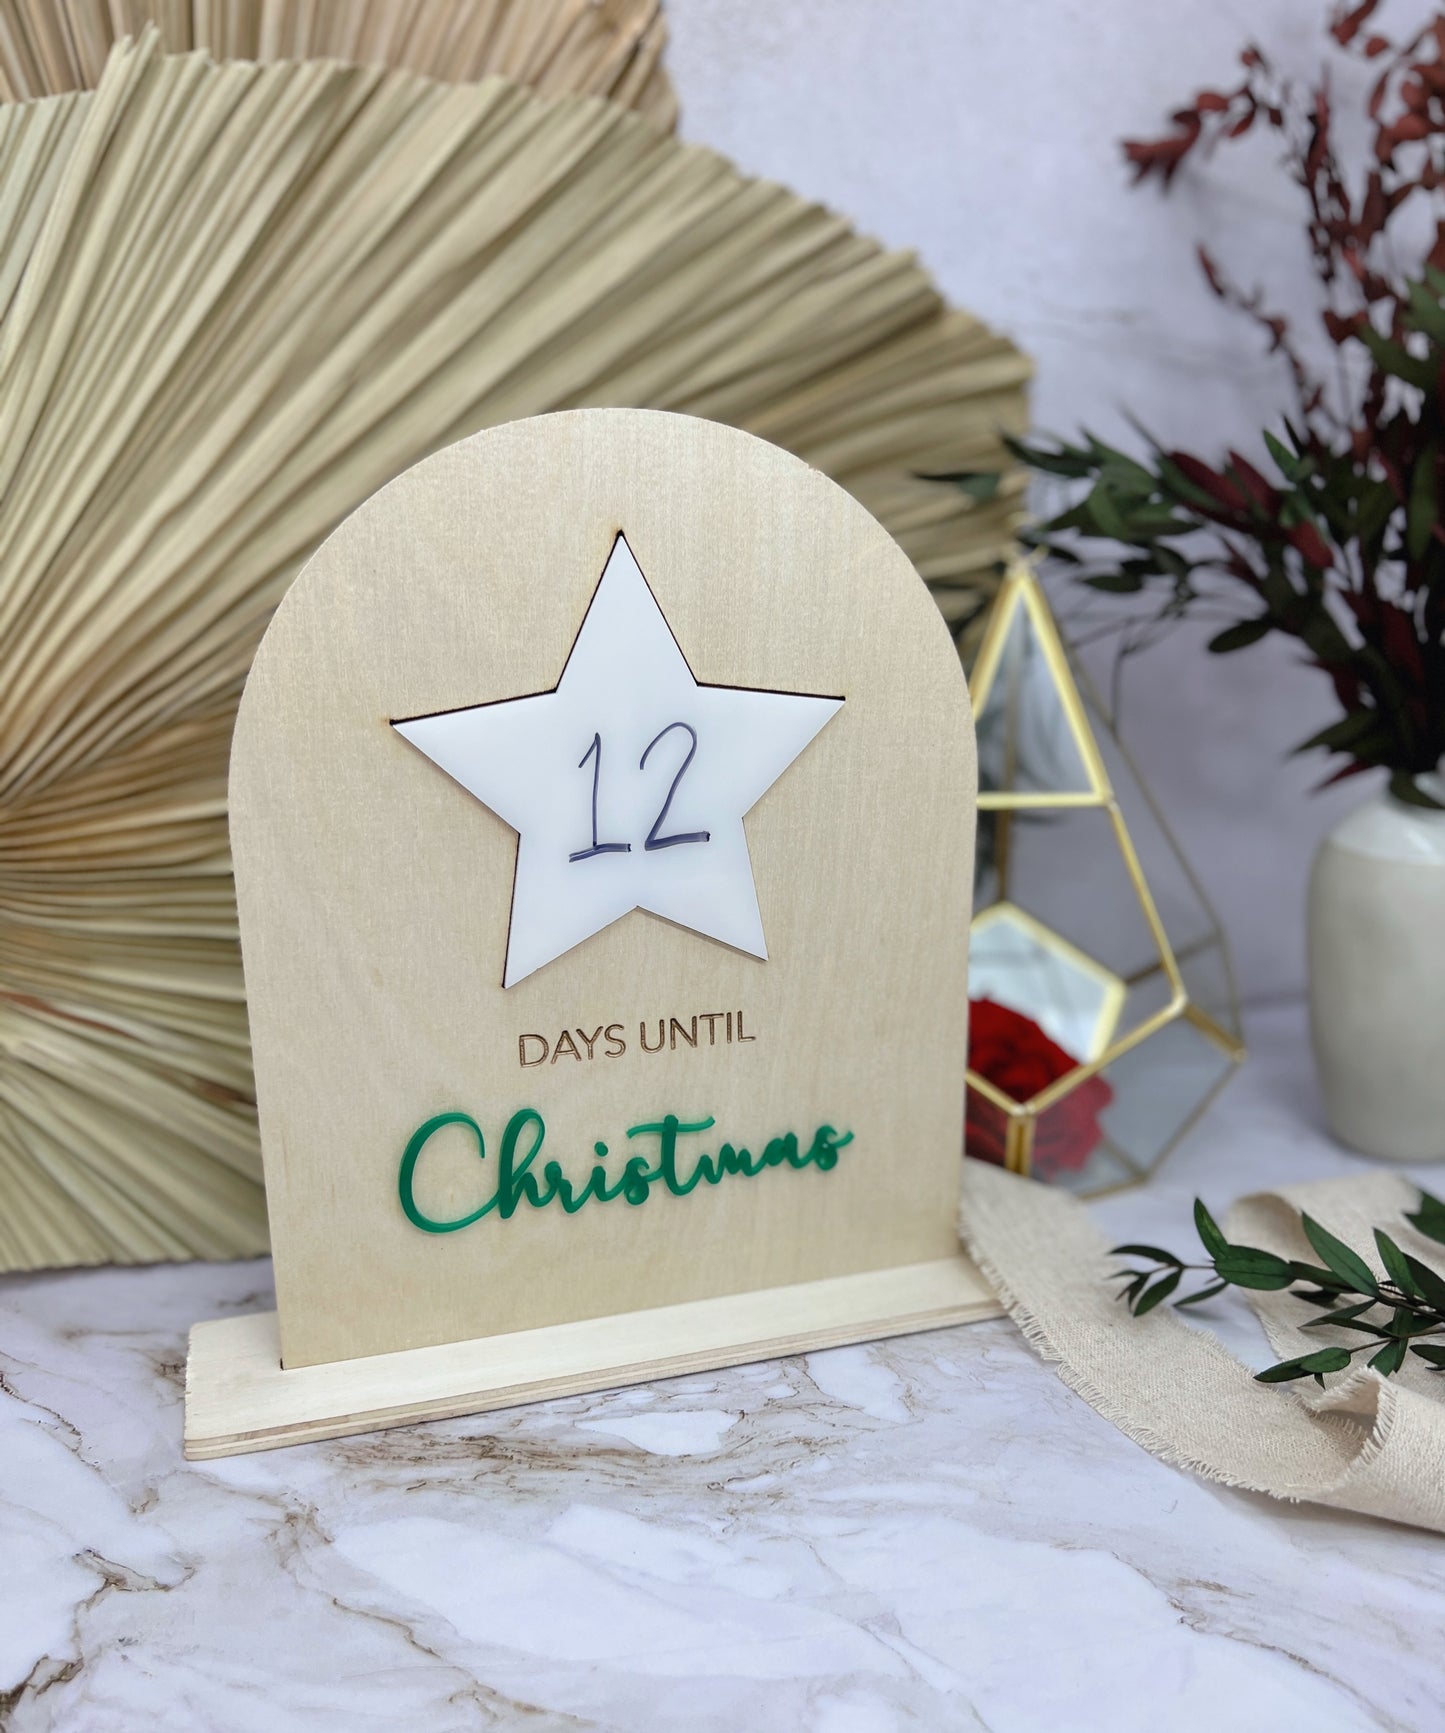 Days Until Christmas - Christmas Countdown Sign | Christmas Decor 4